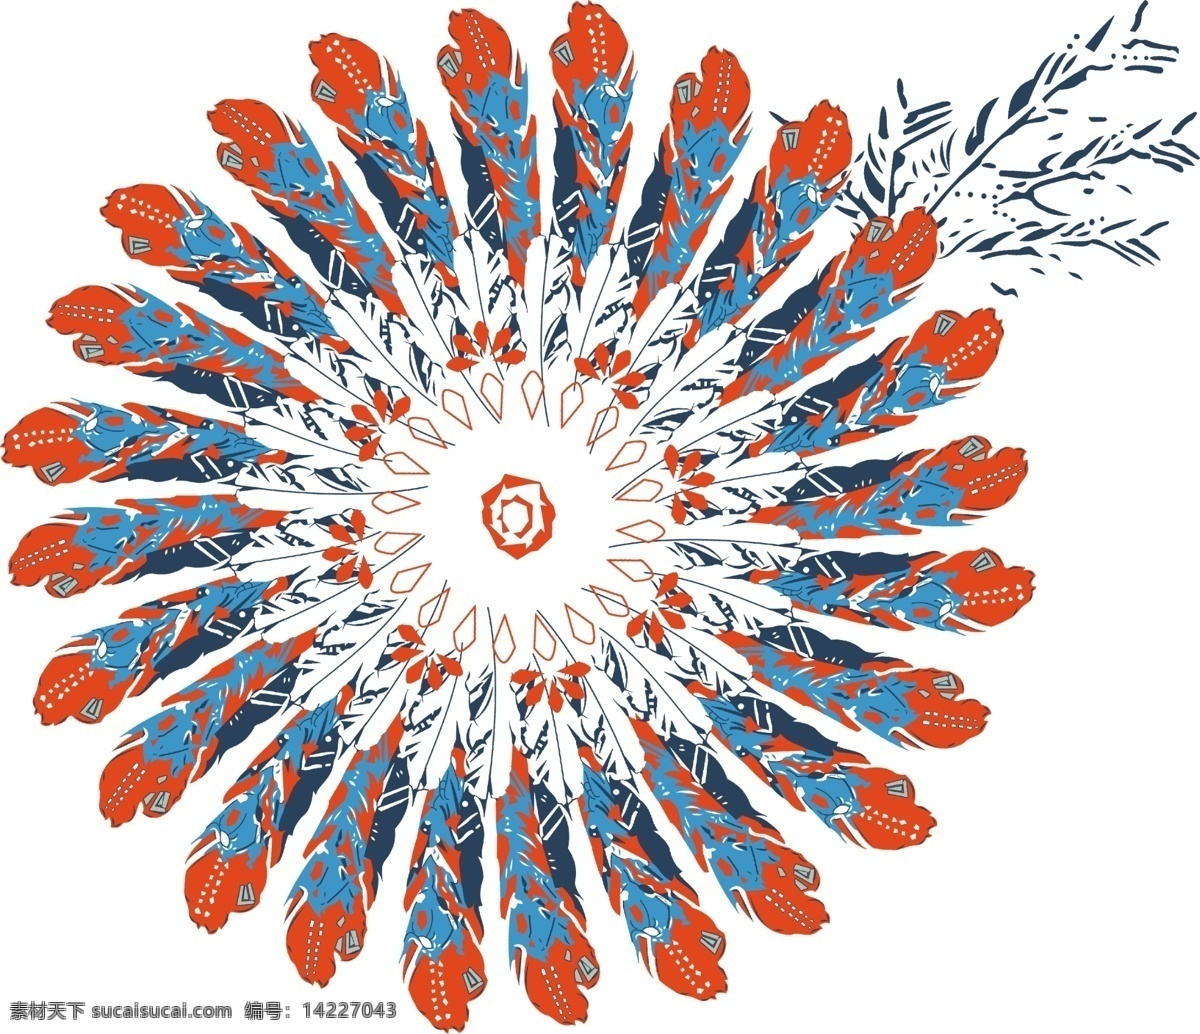 羽毛 民族风图片 数码印花 丝巾 方巾 手绘花 几何 民族风 分层